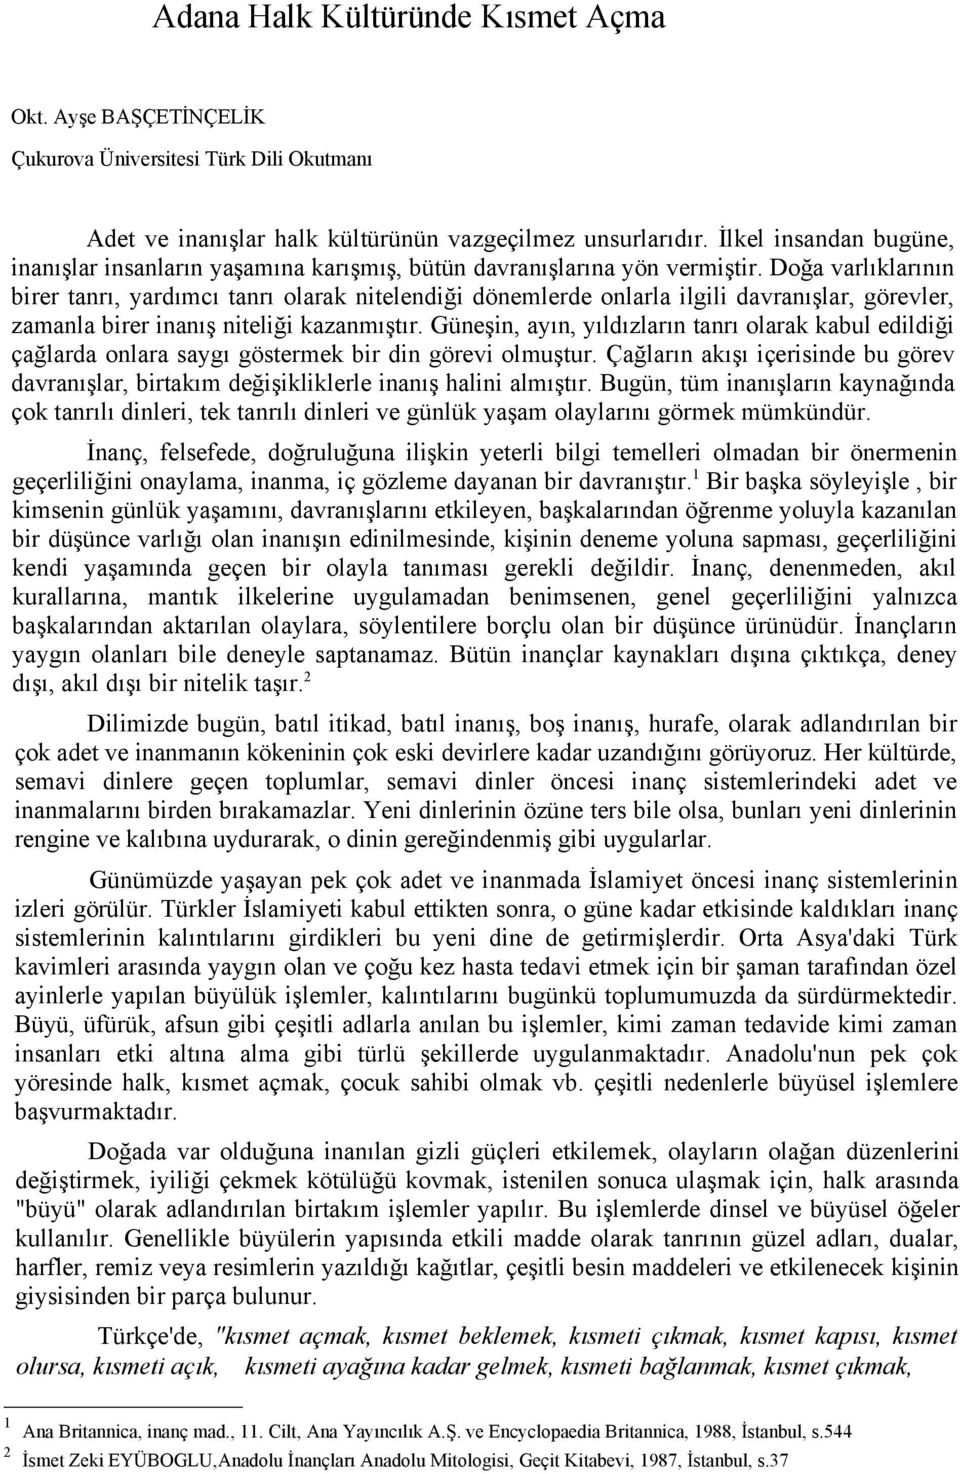 Adana Halk Kültüründe Kısmet Açma - PDF Ücretsiz indirin